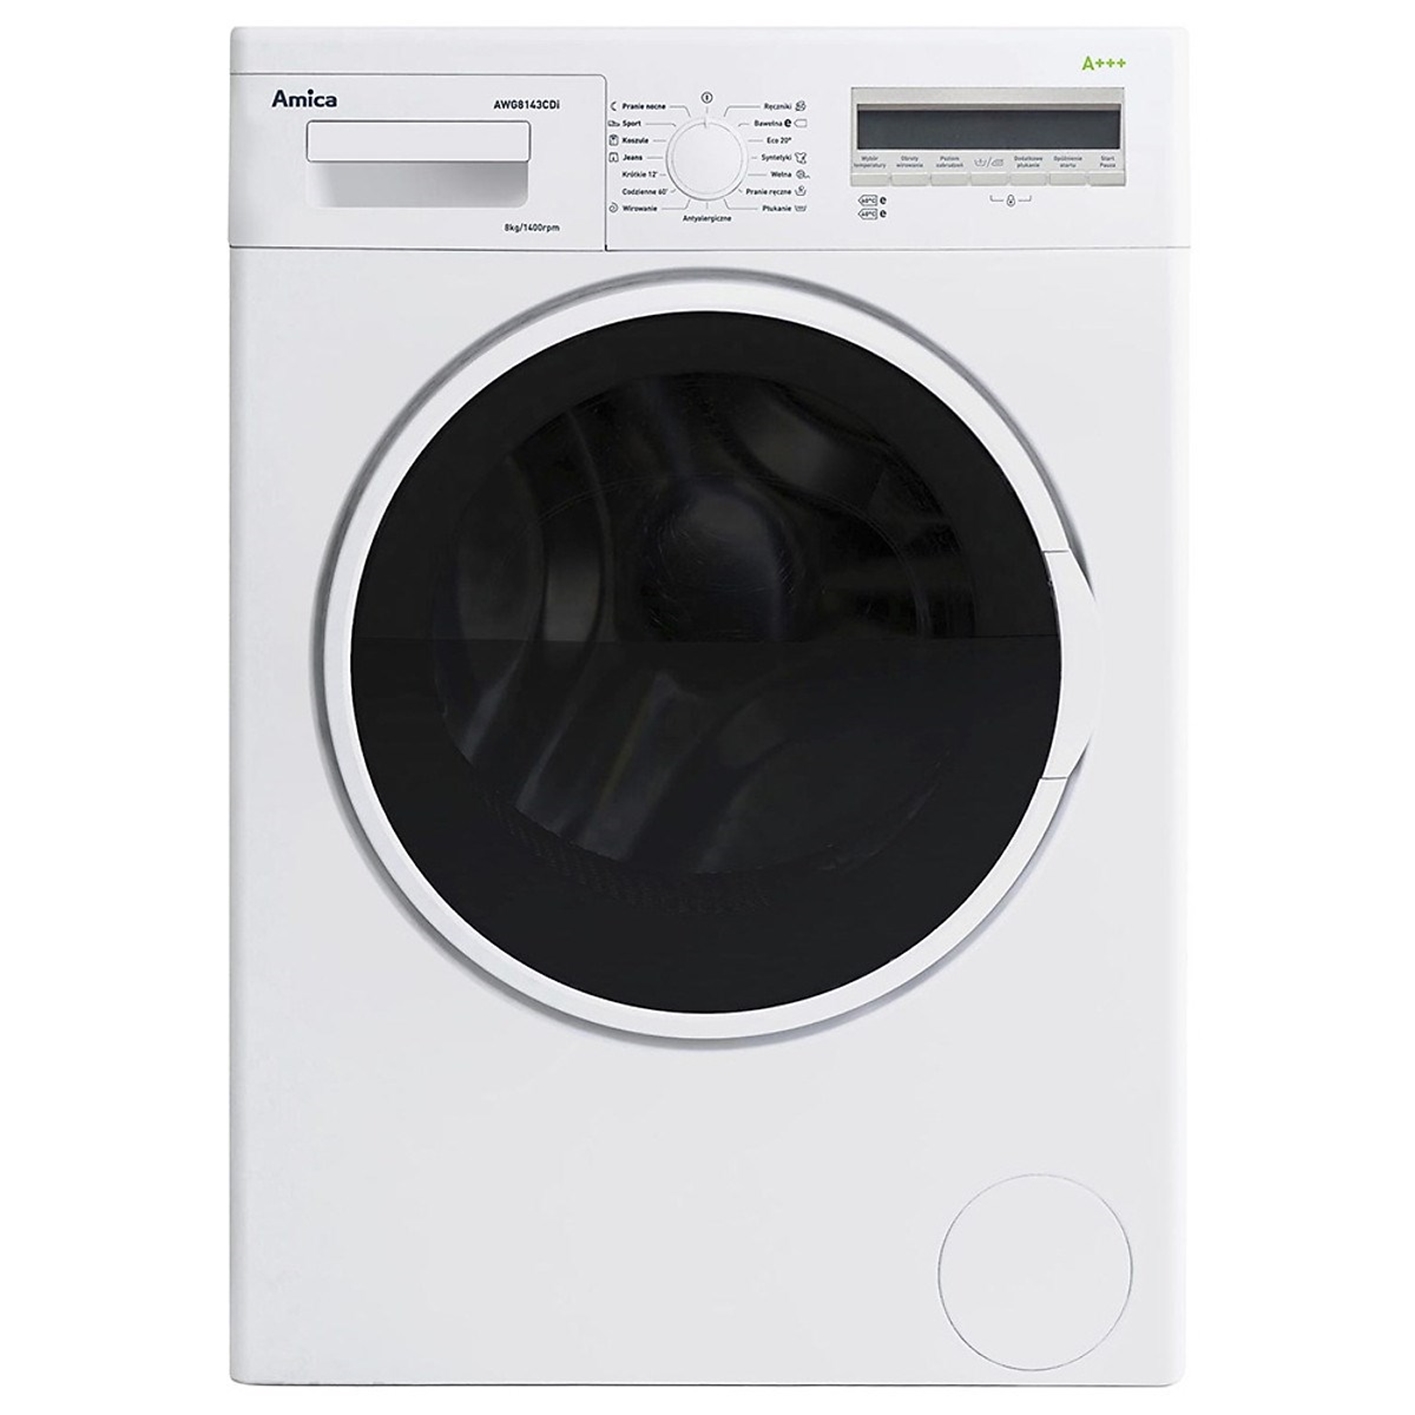 Hình ảnh của Máy giặt Bosch AWG8143CDI